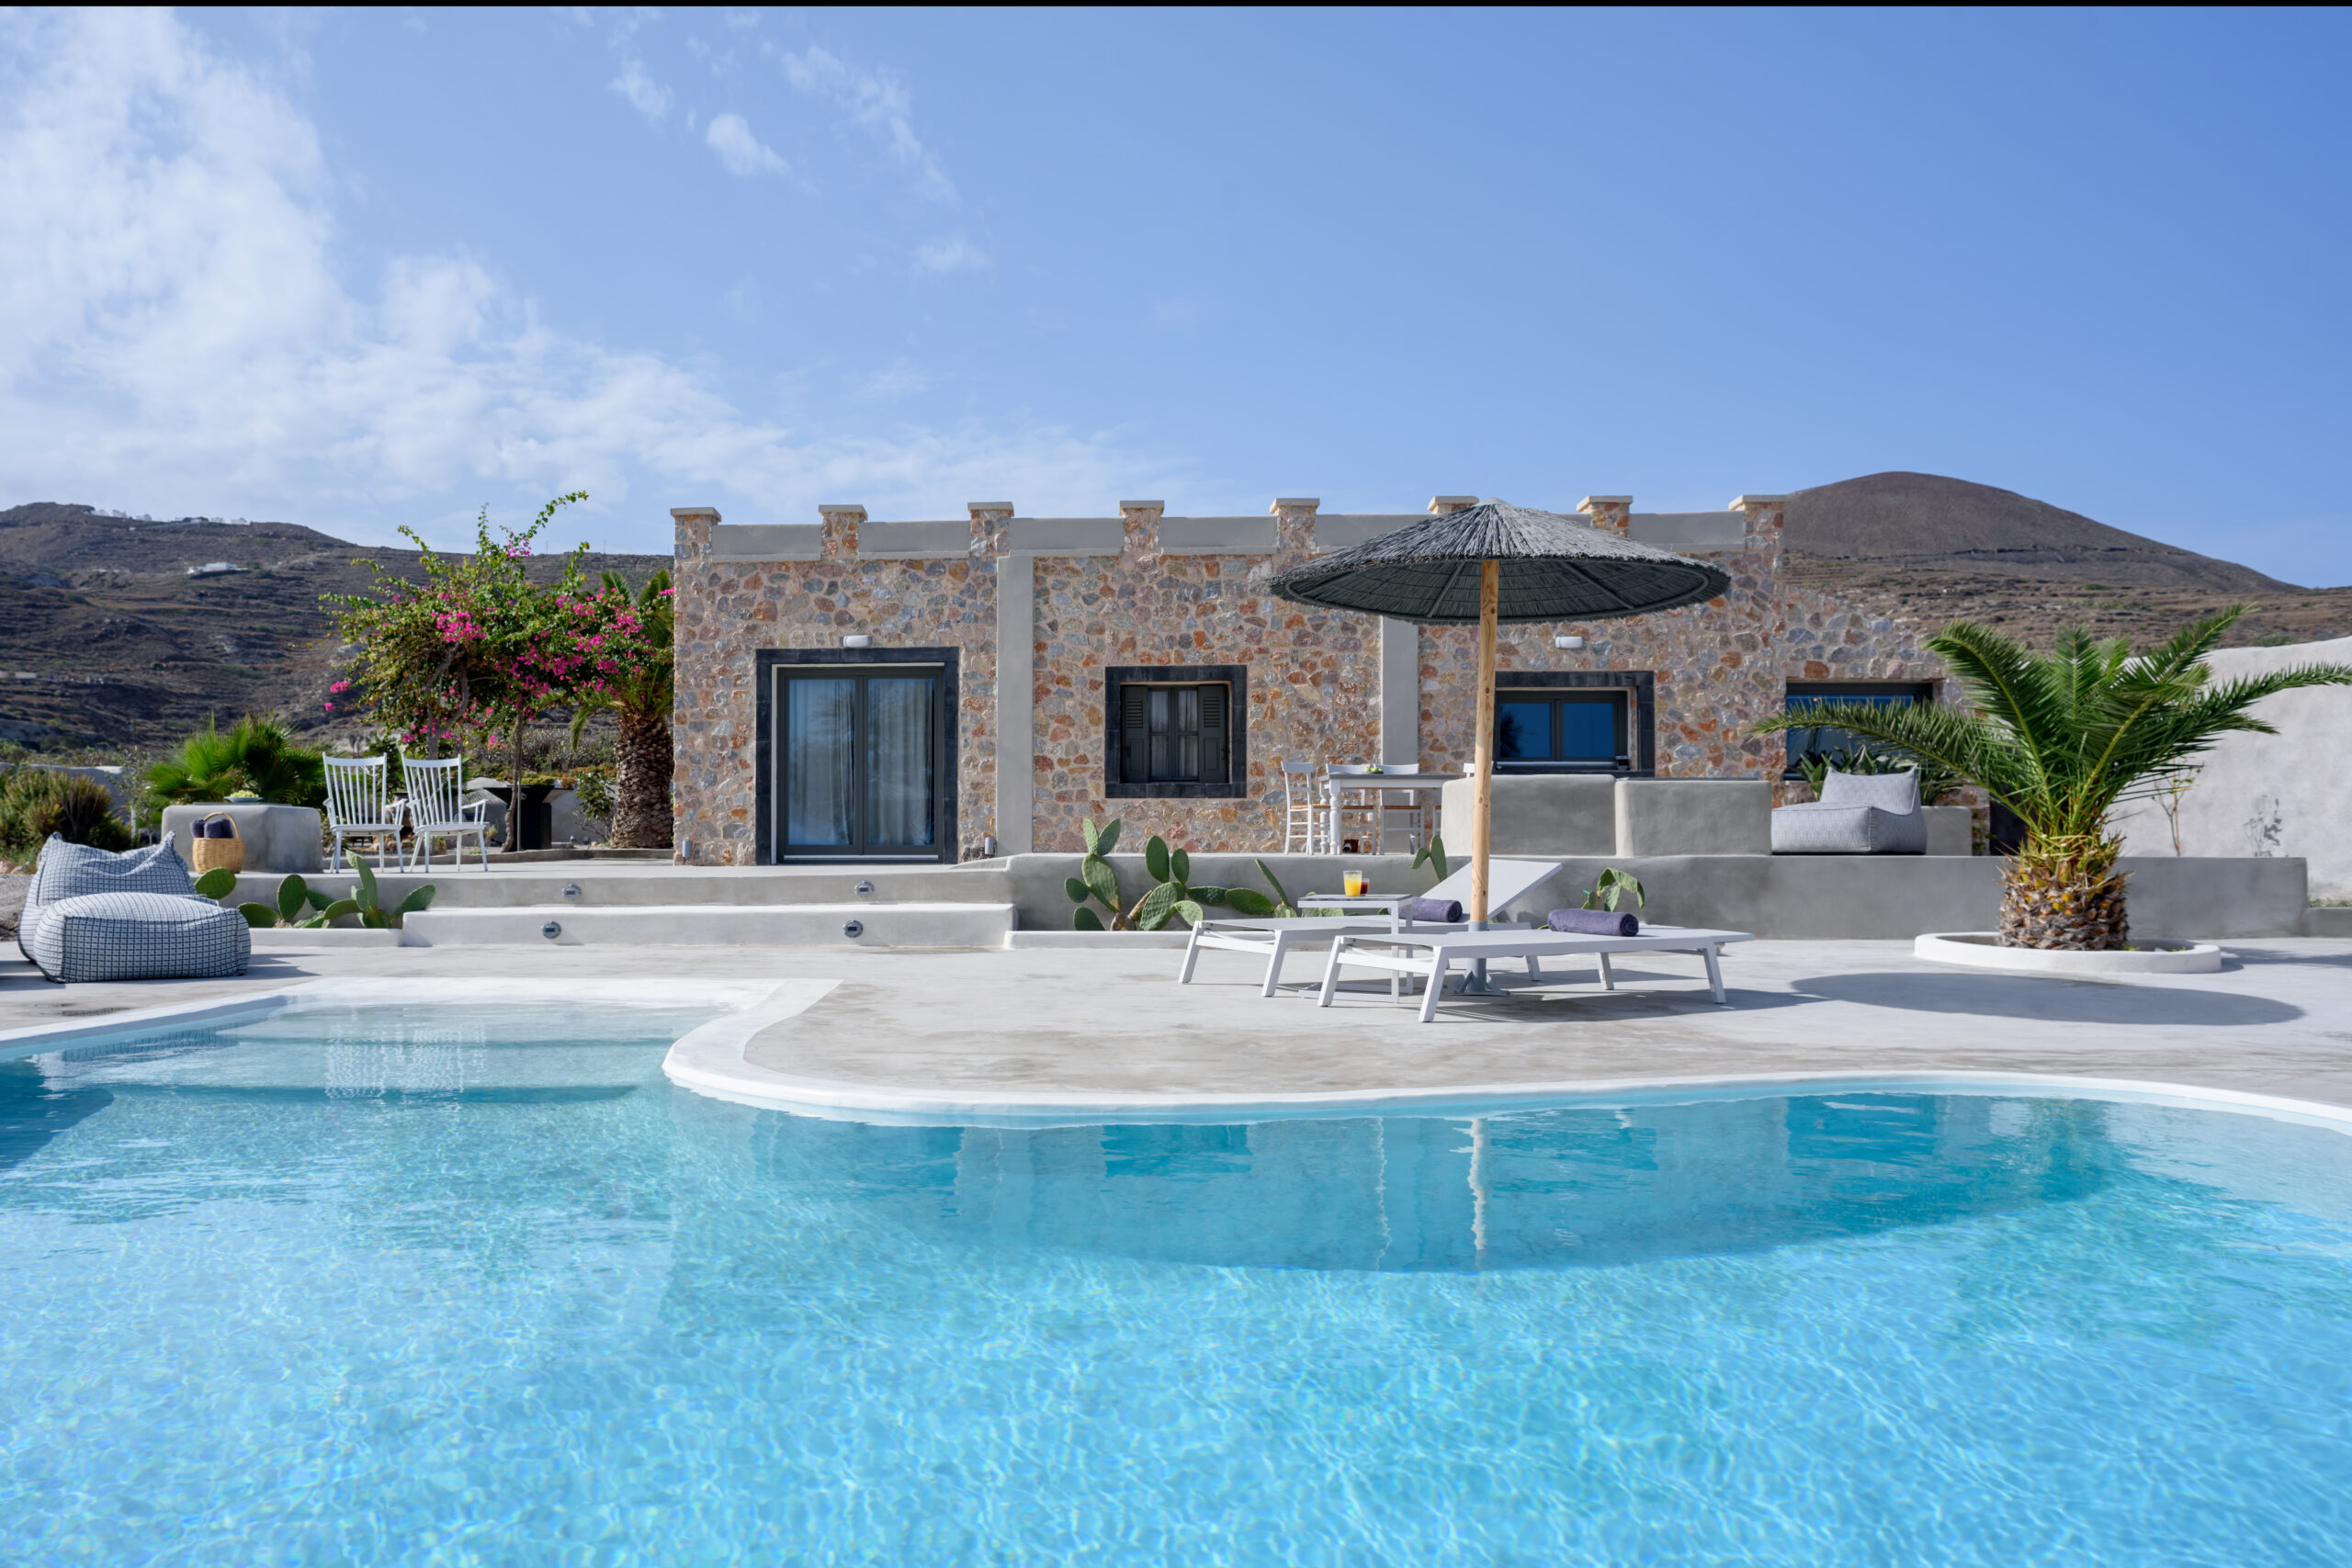 Beltramo Villa in Santorini island of Cyclades , Greece